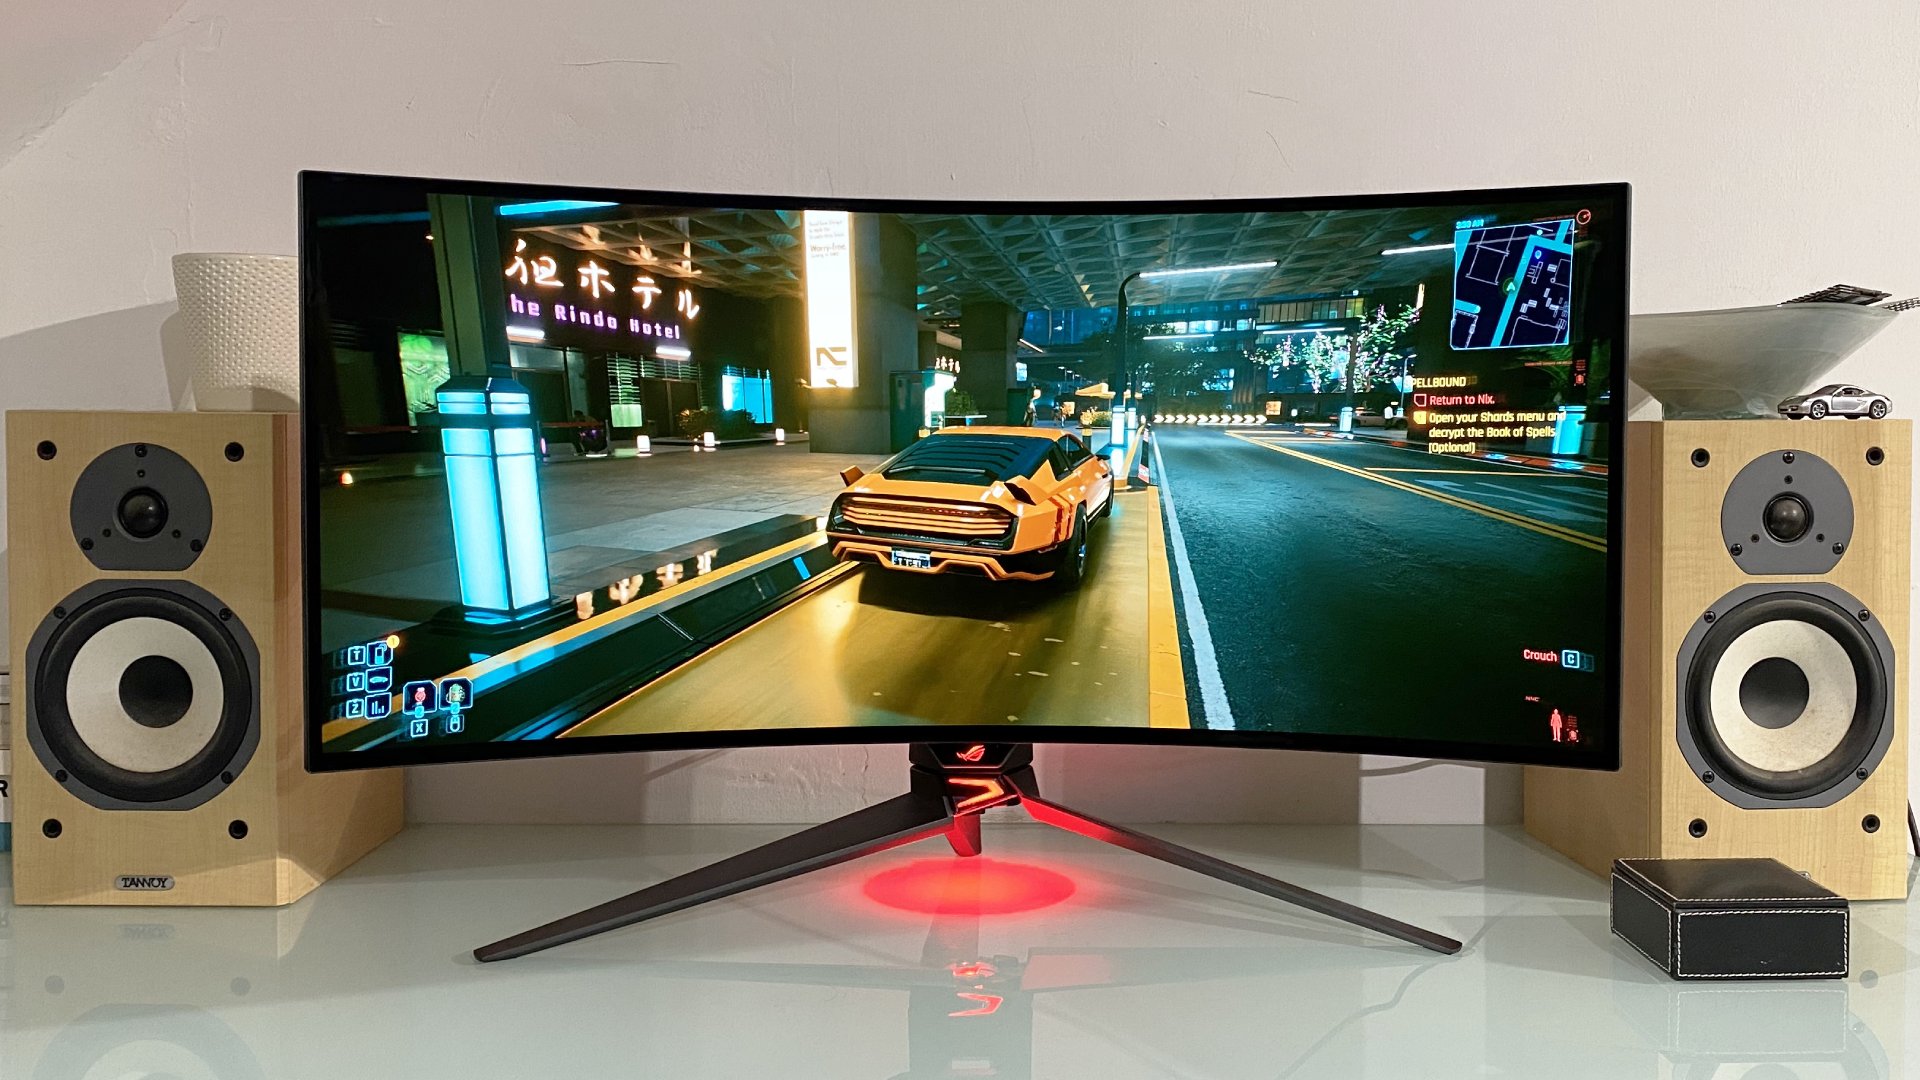  LG's new $1 billion investment should help make OLED monitors cheaper 